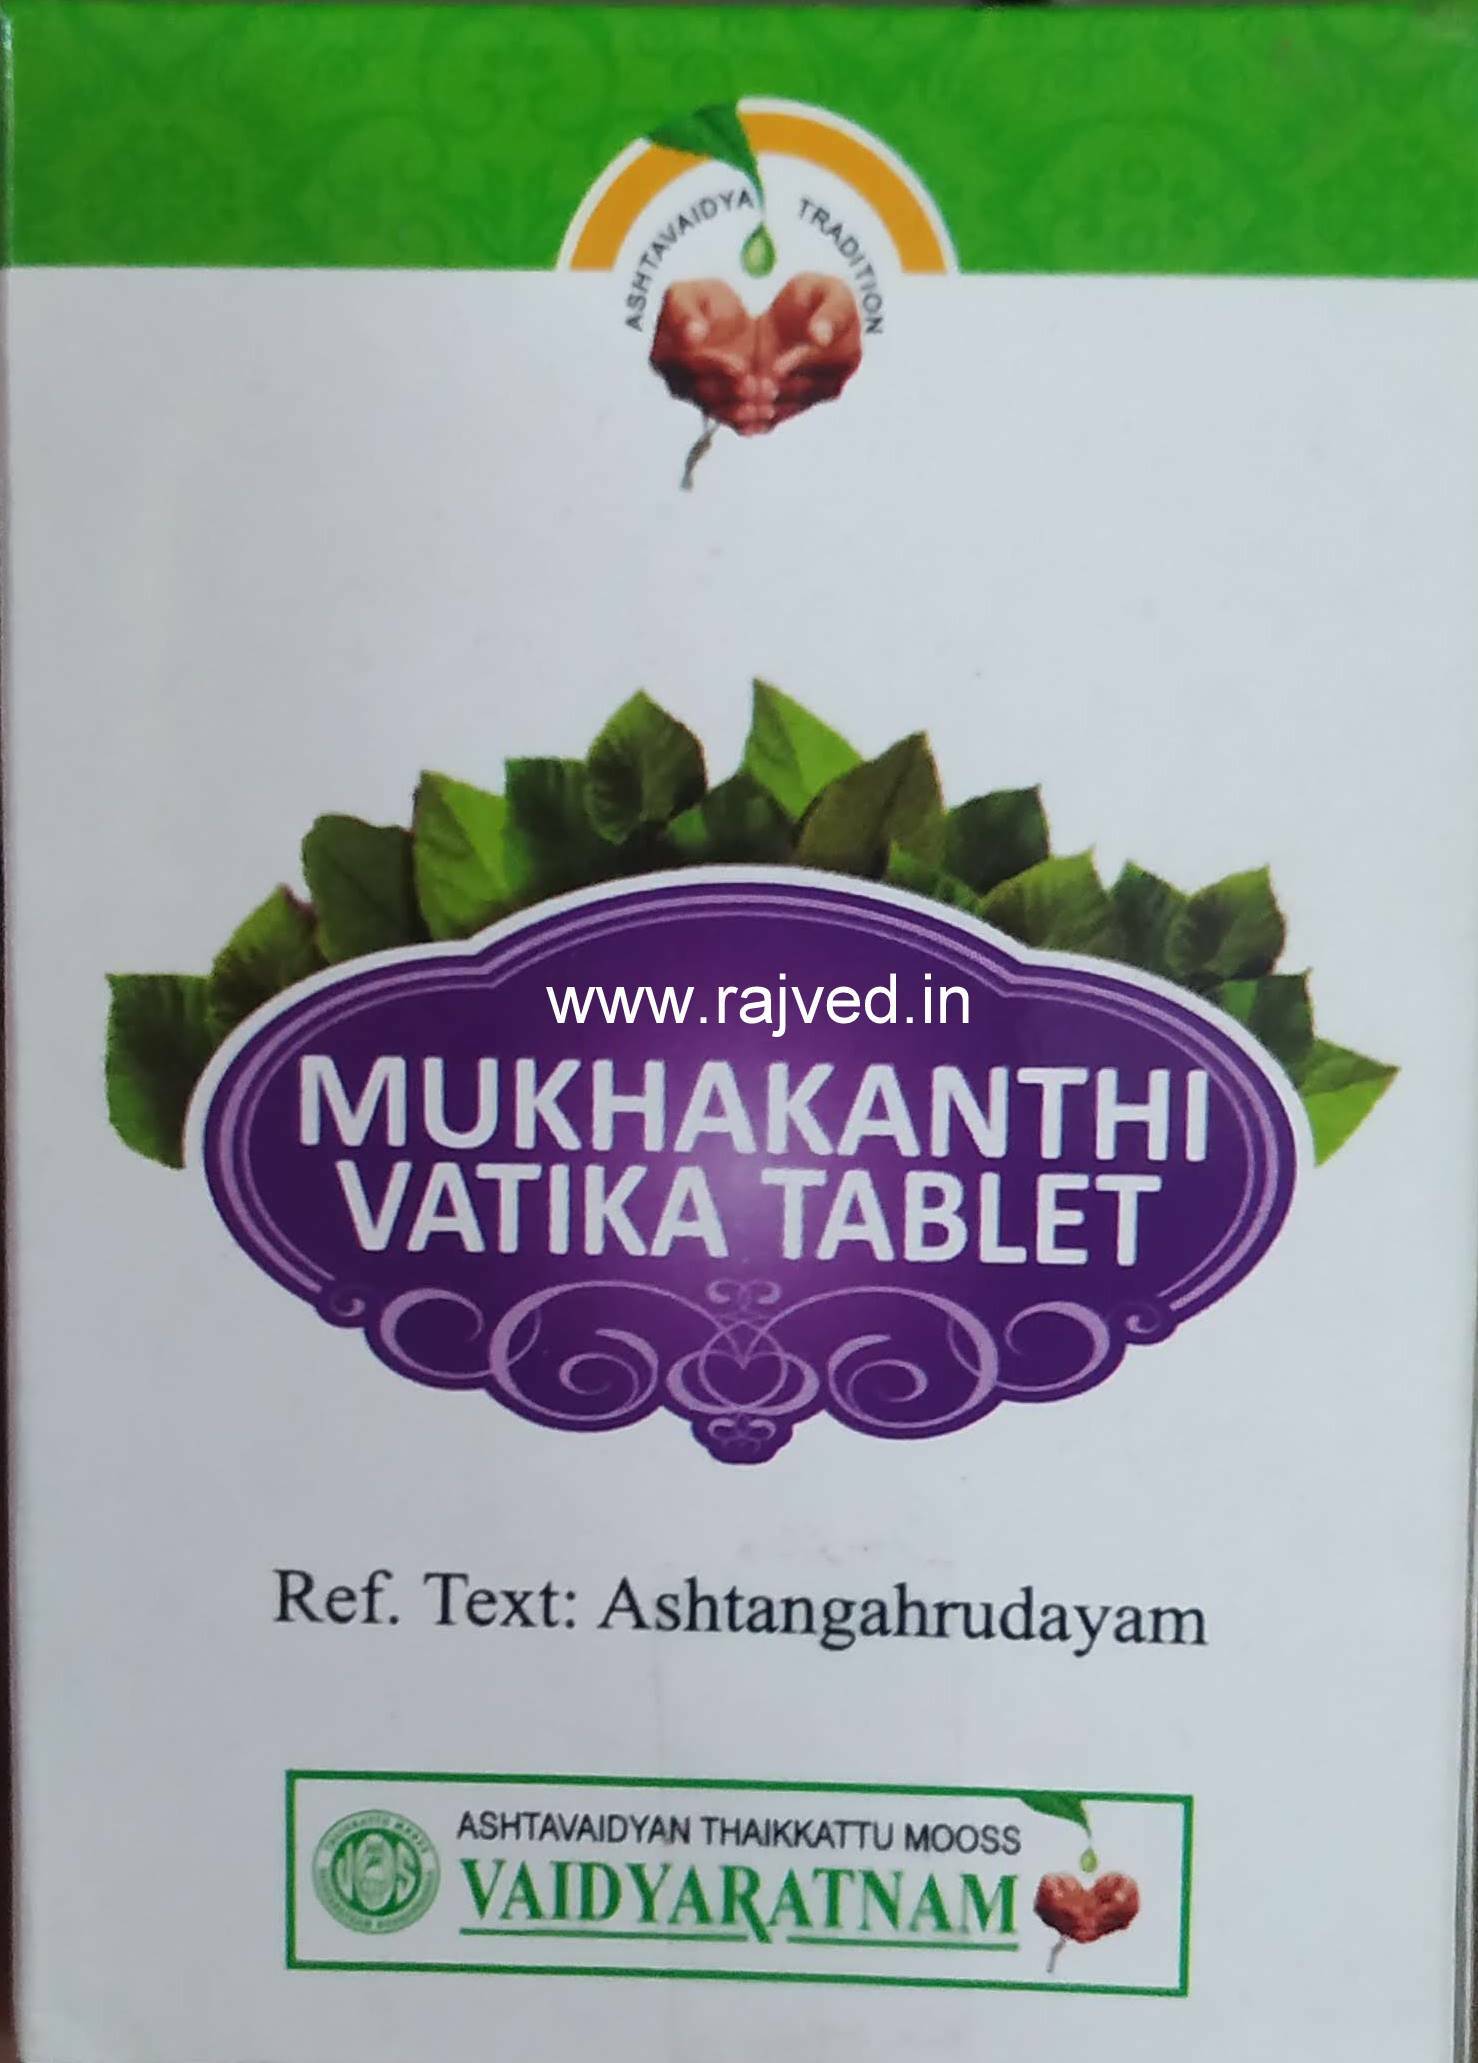 mukhakanthi vatika 200 tablets upto 20% off free shipping vaidyaratnam oushadhalaya